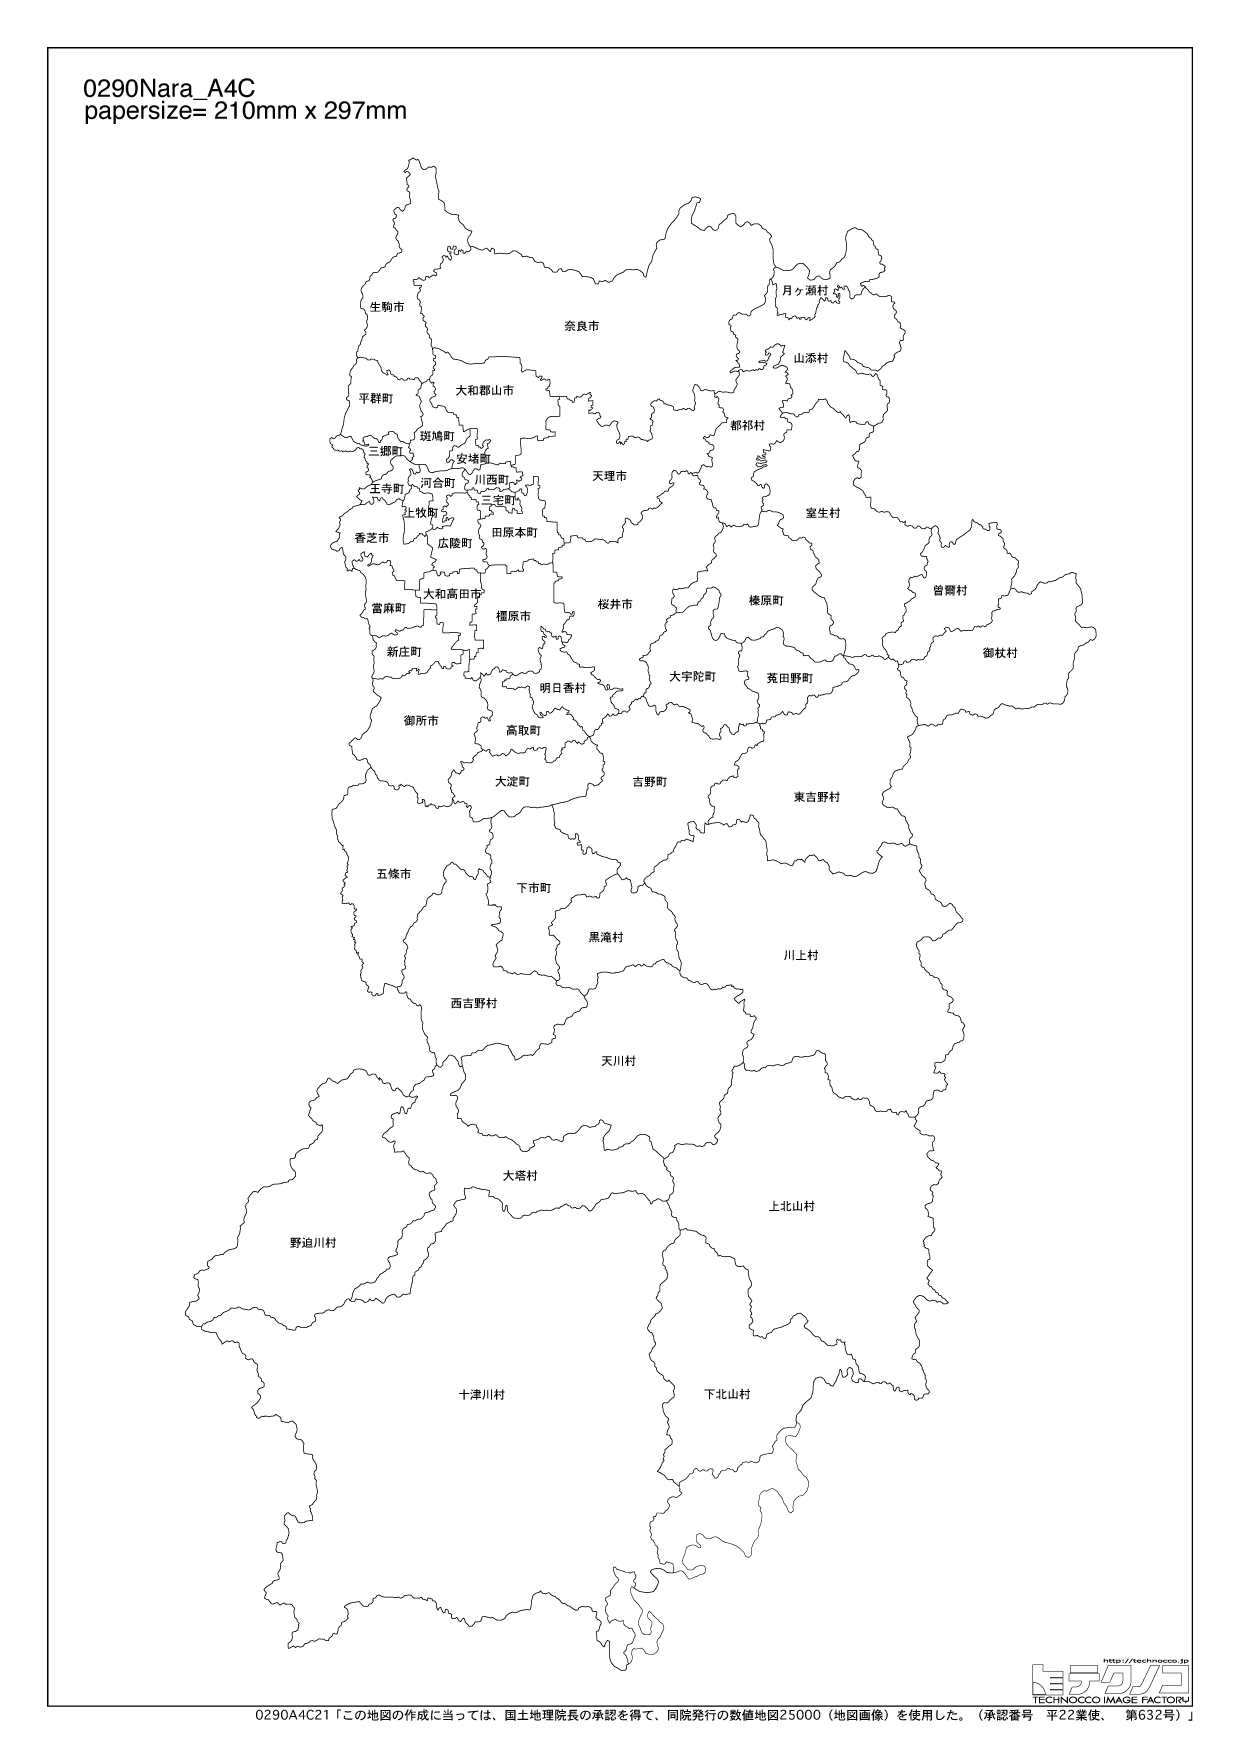 奈良県の白地図と市町村の合併情報